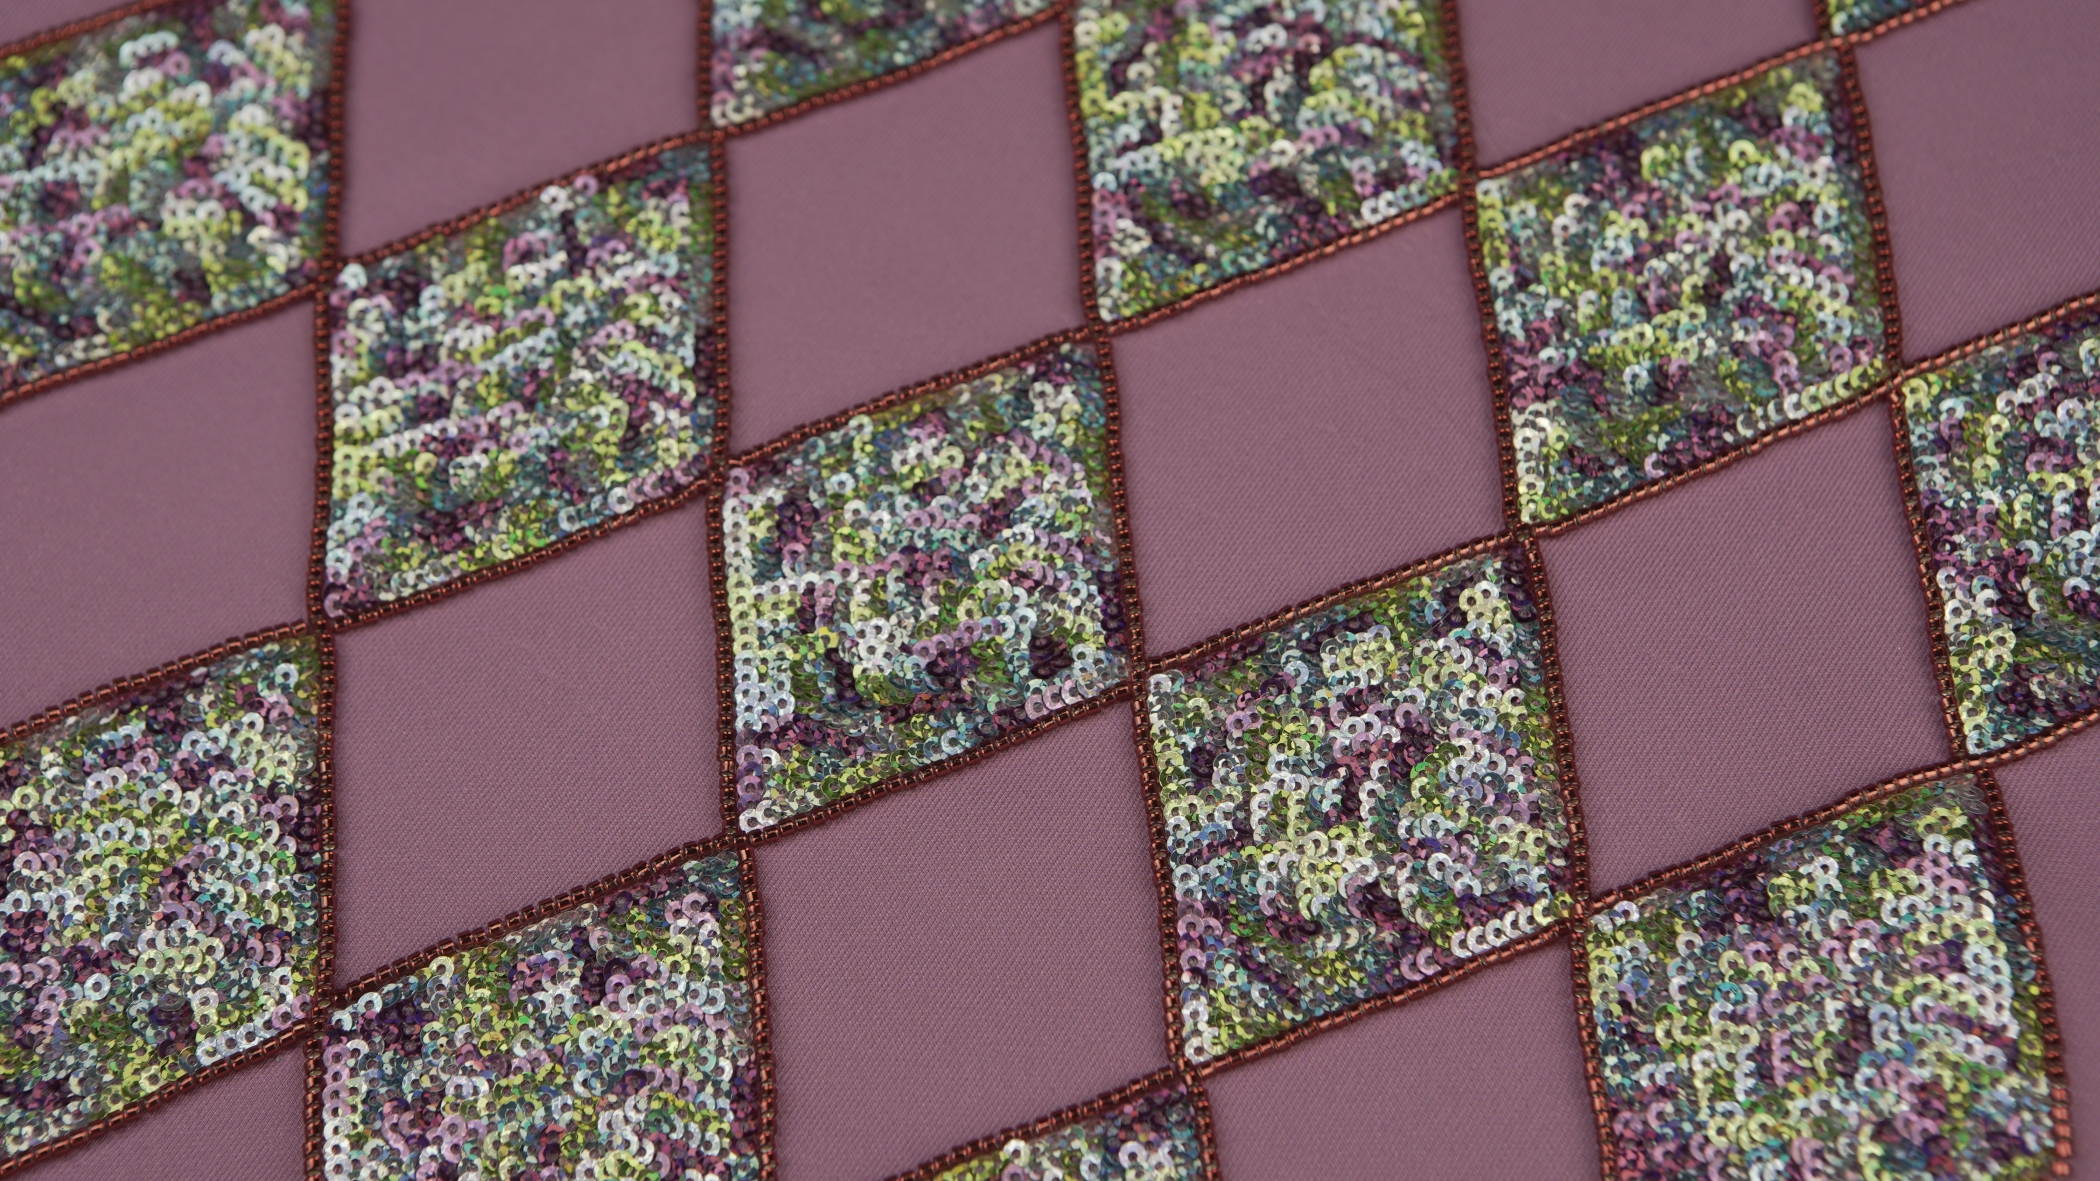 quadrados de lantejoulas de diversas cores misturadas, como por exemplo, azul, rosa e verde, com a técnica de Bordado em lantejoulas